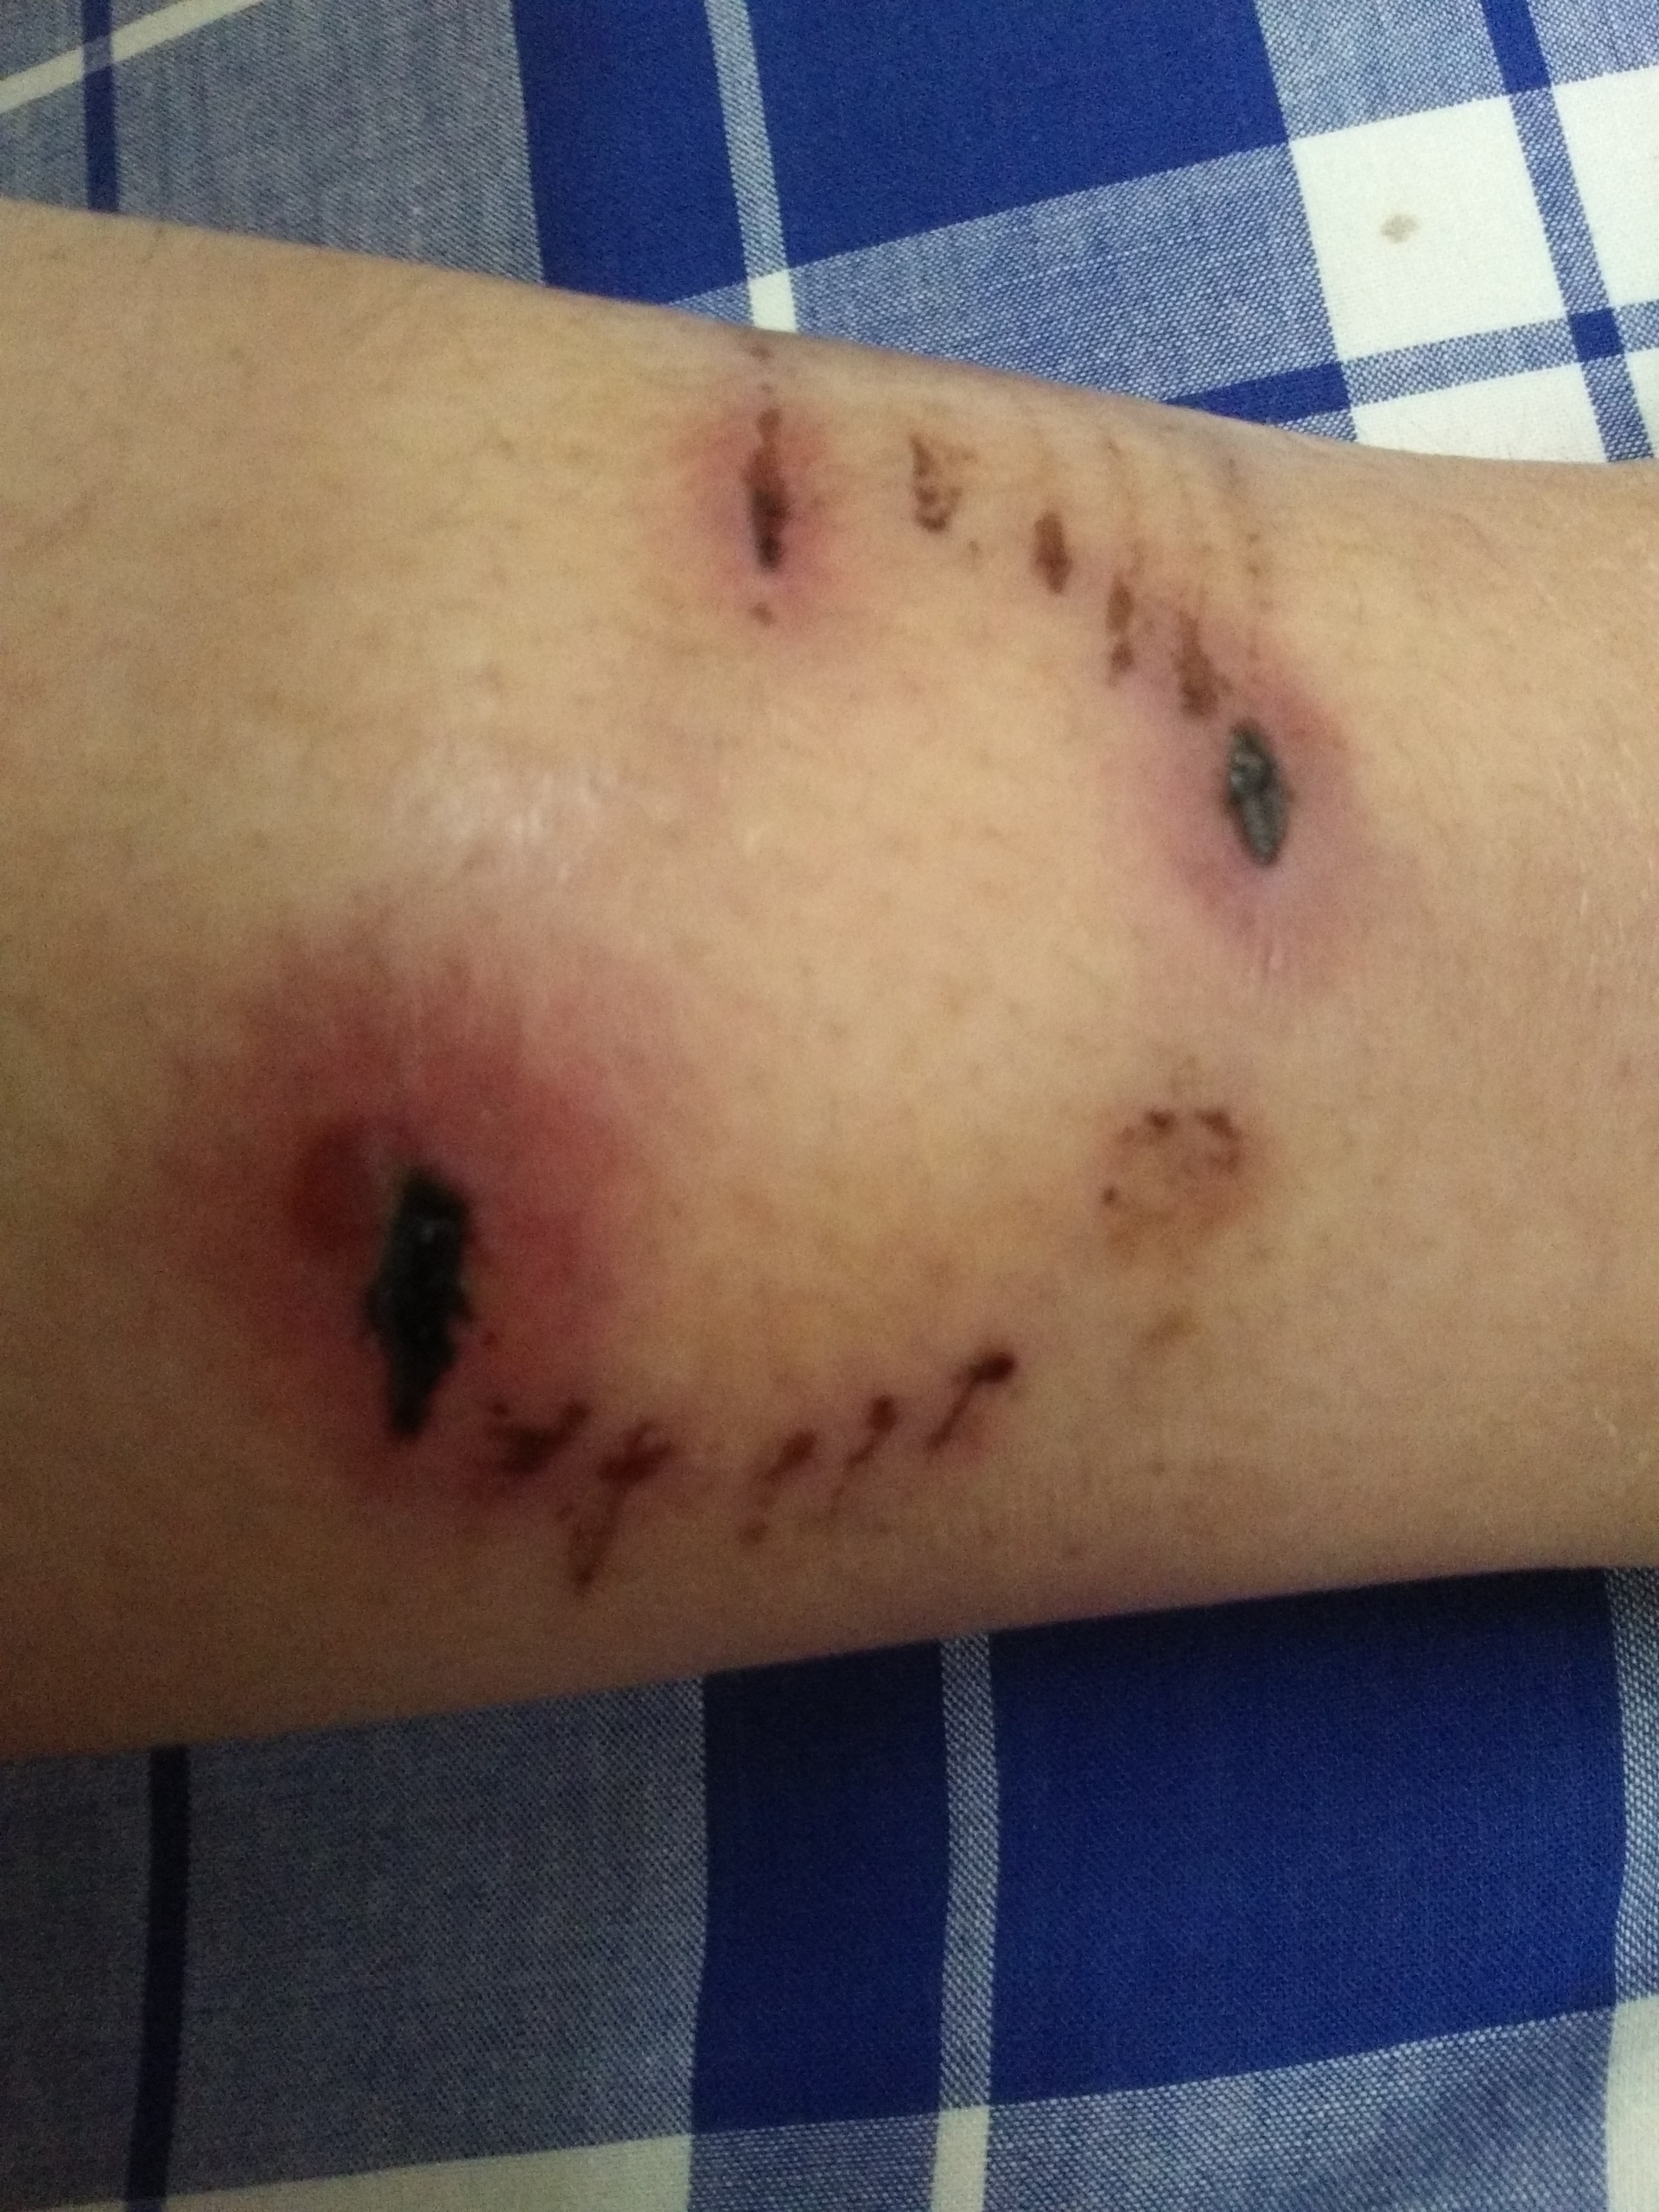 我被狗咬了十天了,咬的是右小腿,该打的针都打过了,伤口已经结